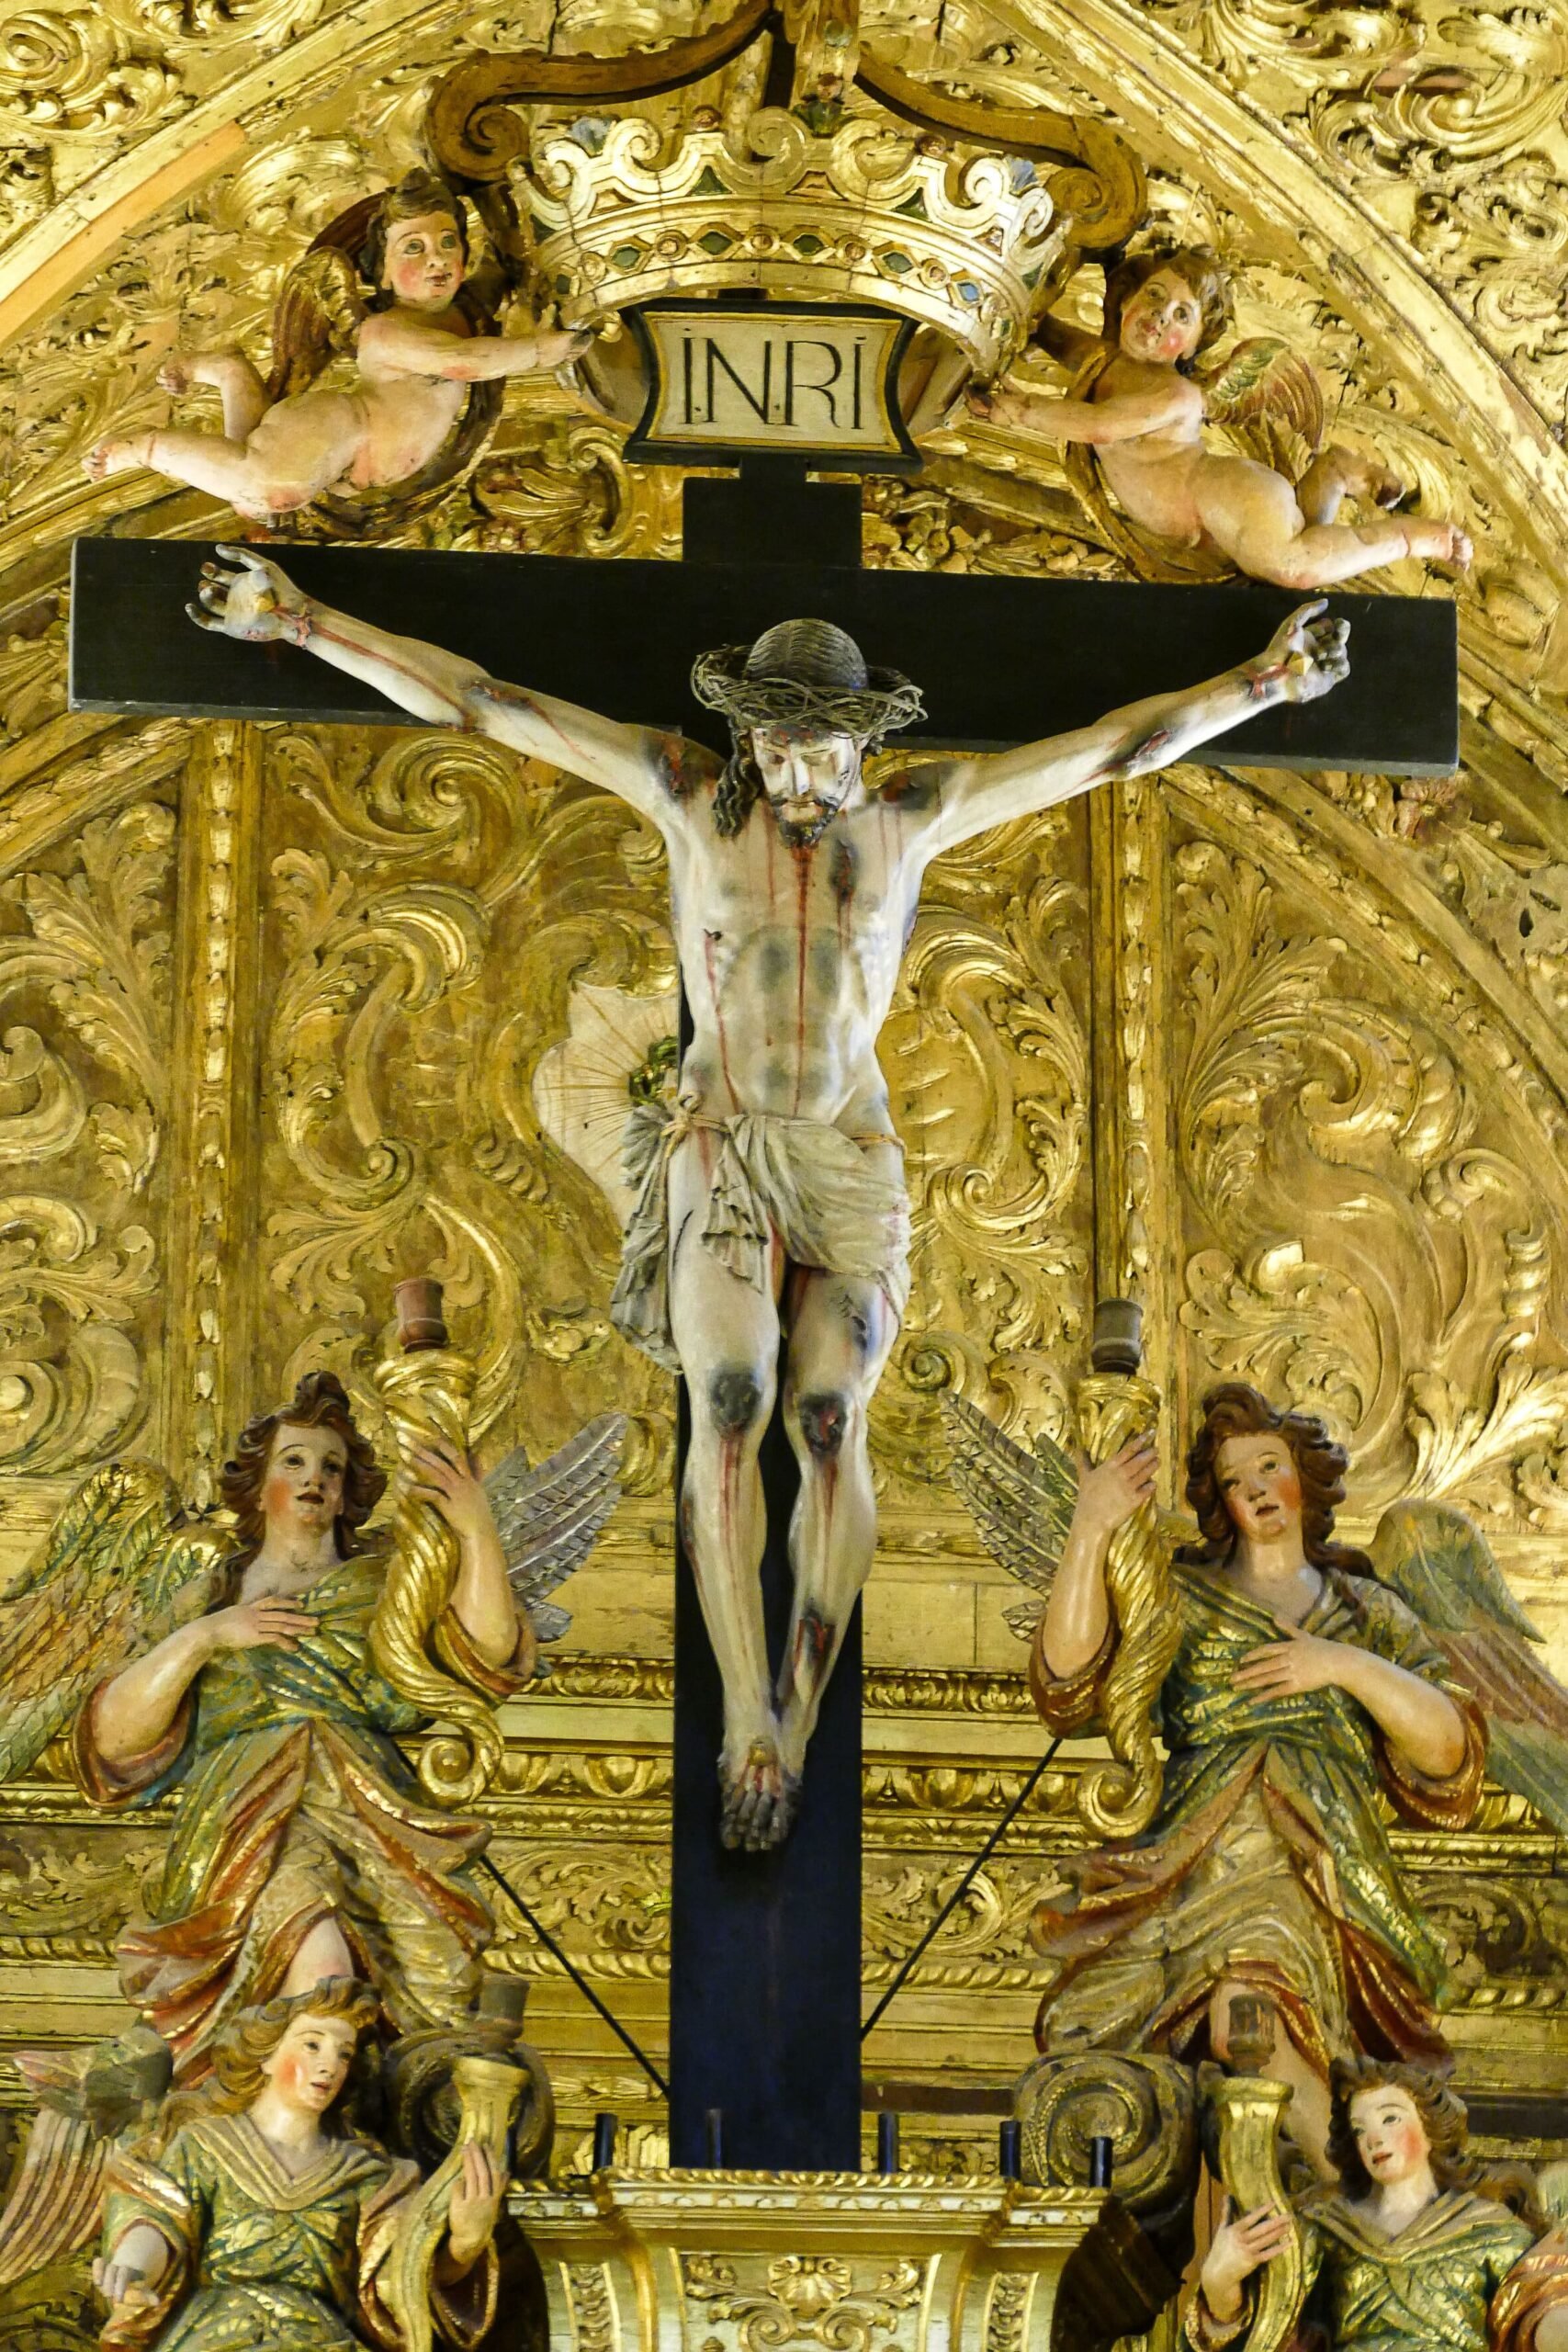 significado-de-la-cruz-de-inri-en-la-iglesia-de-san-francisco-evora-portugal